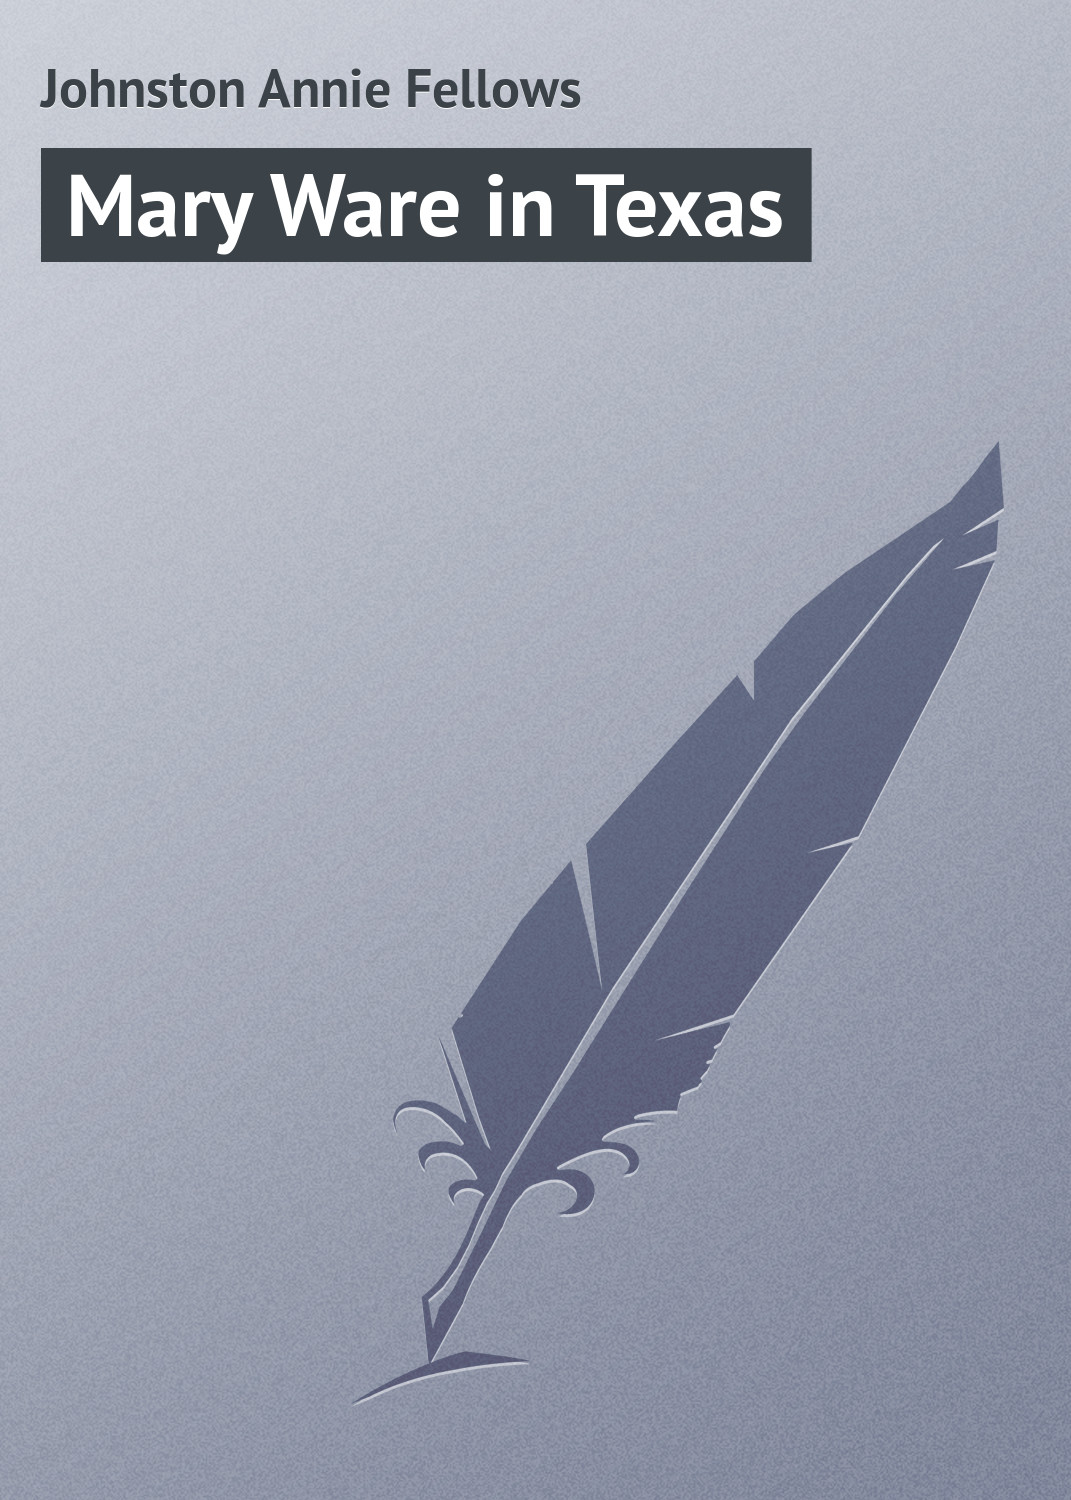 Книга Mary Ware in Texas из серии , созданная Annie Johnston, может относится к жанру Зарубежная классика, Зарубежные детские книги. Стоимость электронной книги Mary Ware in Texas с идентификатором 23154339 составляет 5.99 руб.